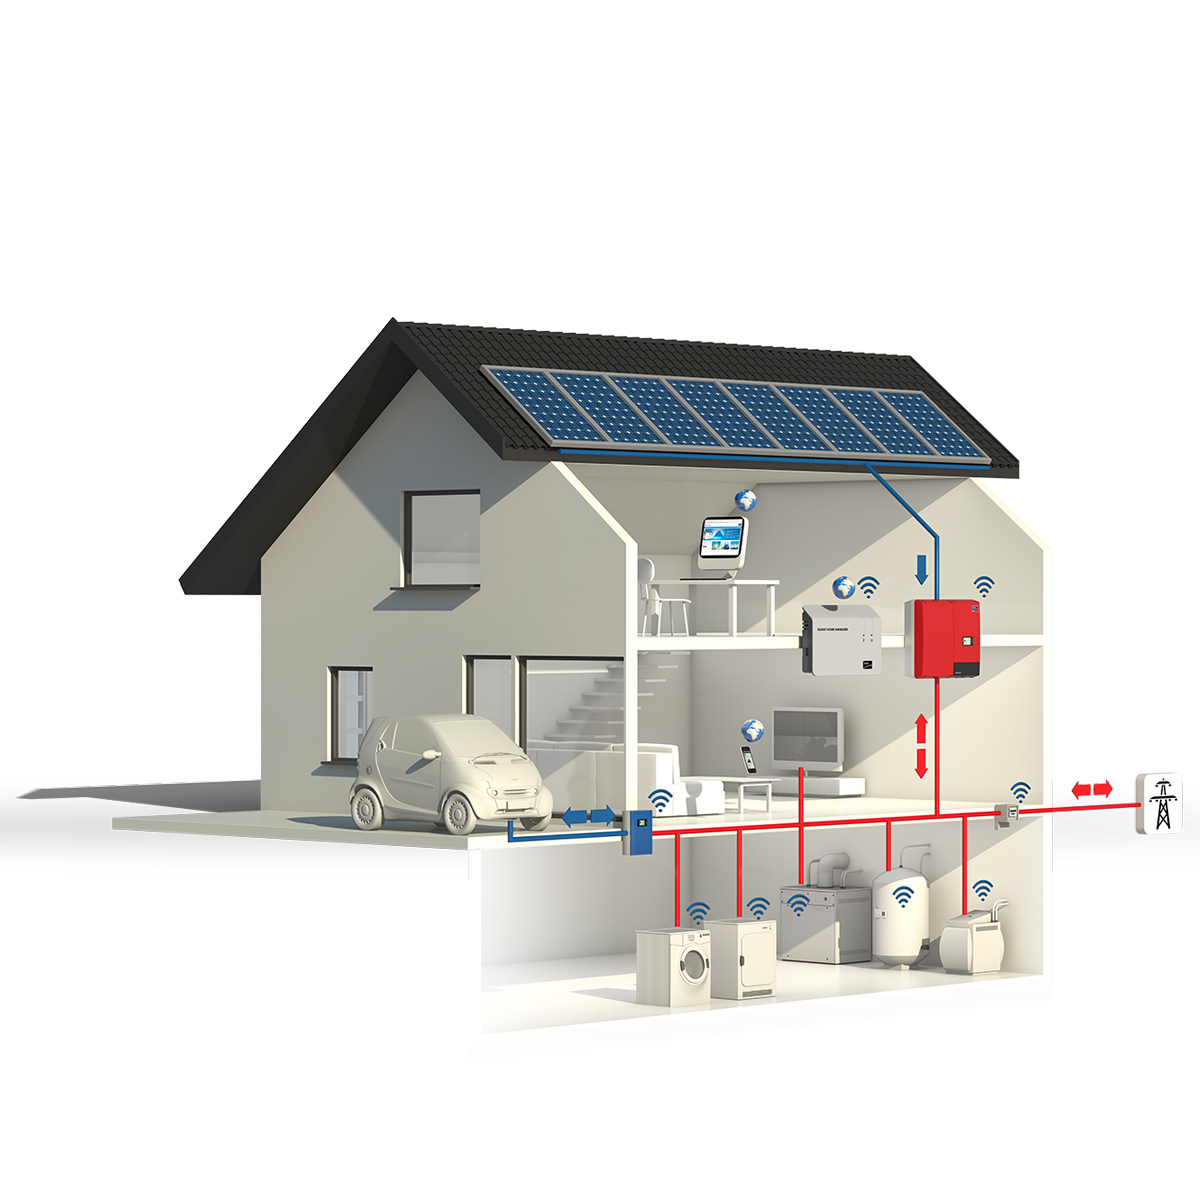 Используйте силу Солнца: полный комплект солнечной энергетической системы для вашего дома